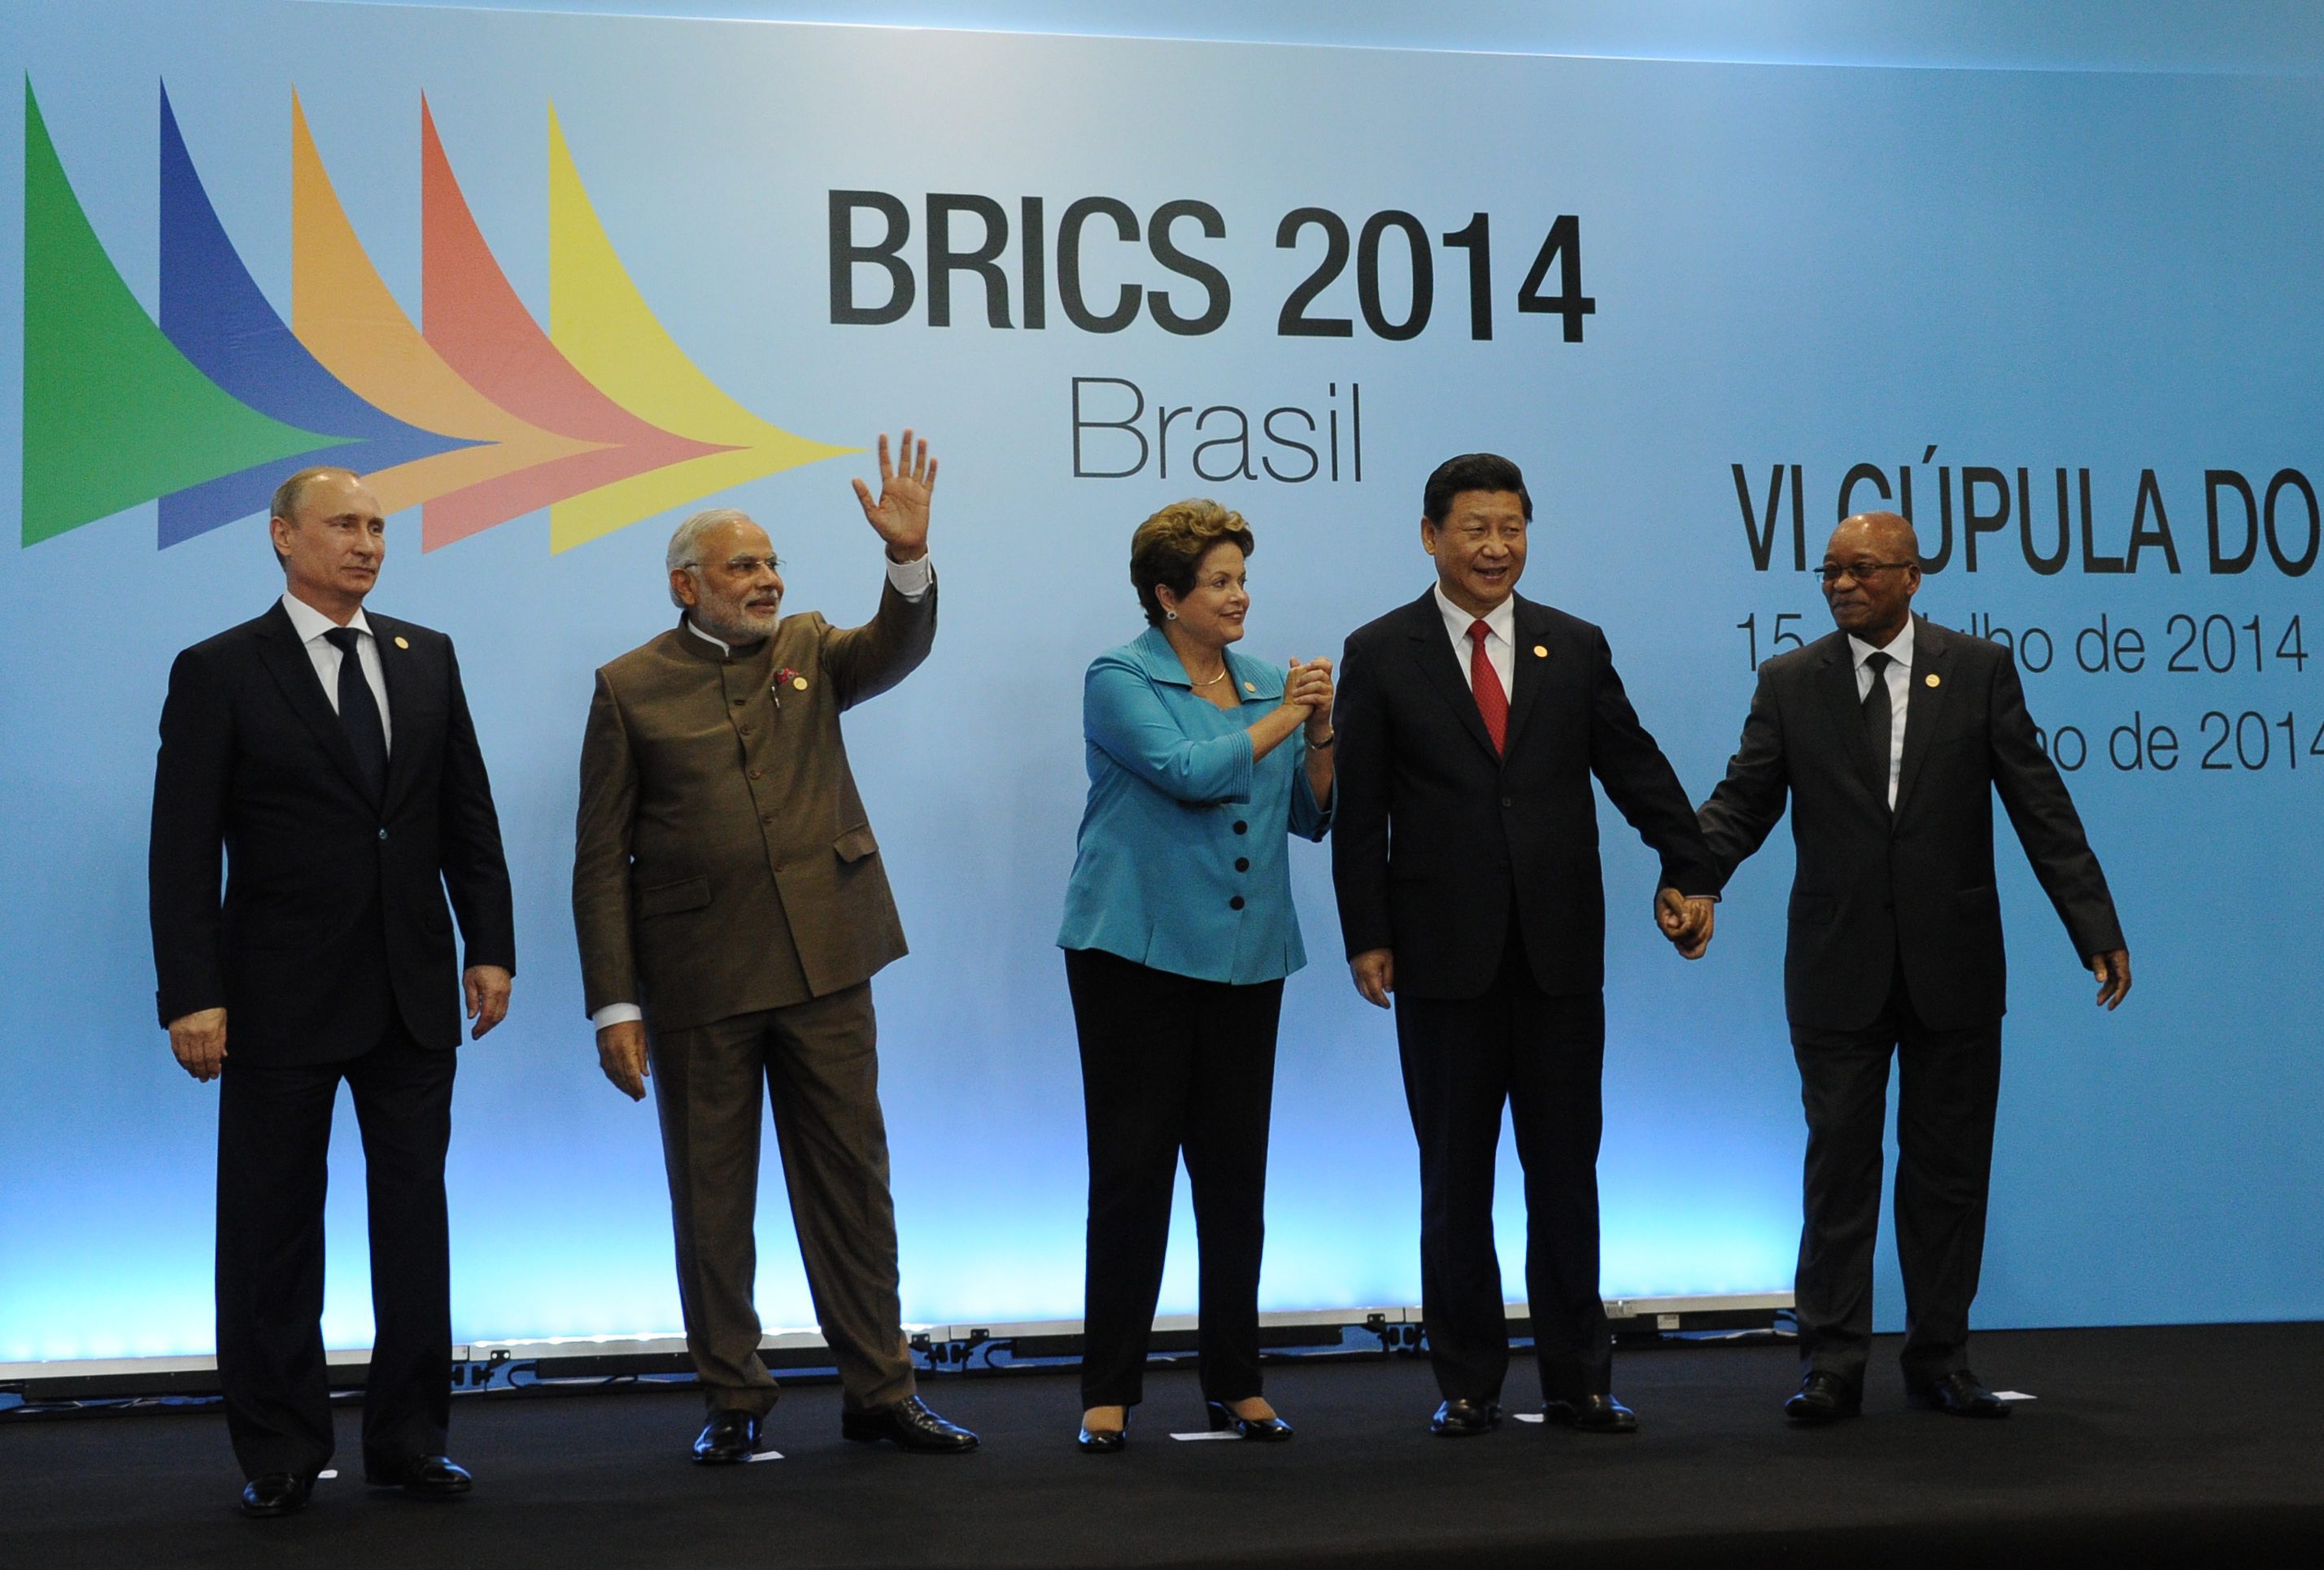 Νέα αναπτυξιακή τράπεζα και αποθεματικό ταμείο ιδρύουν οι BRICS